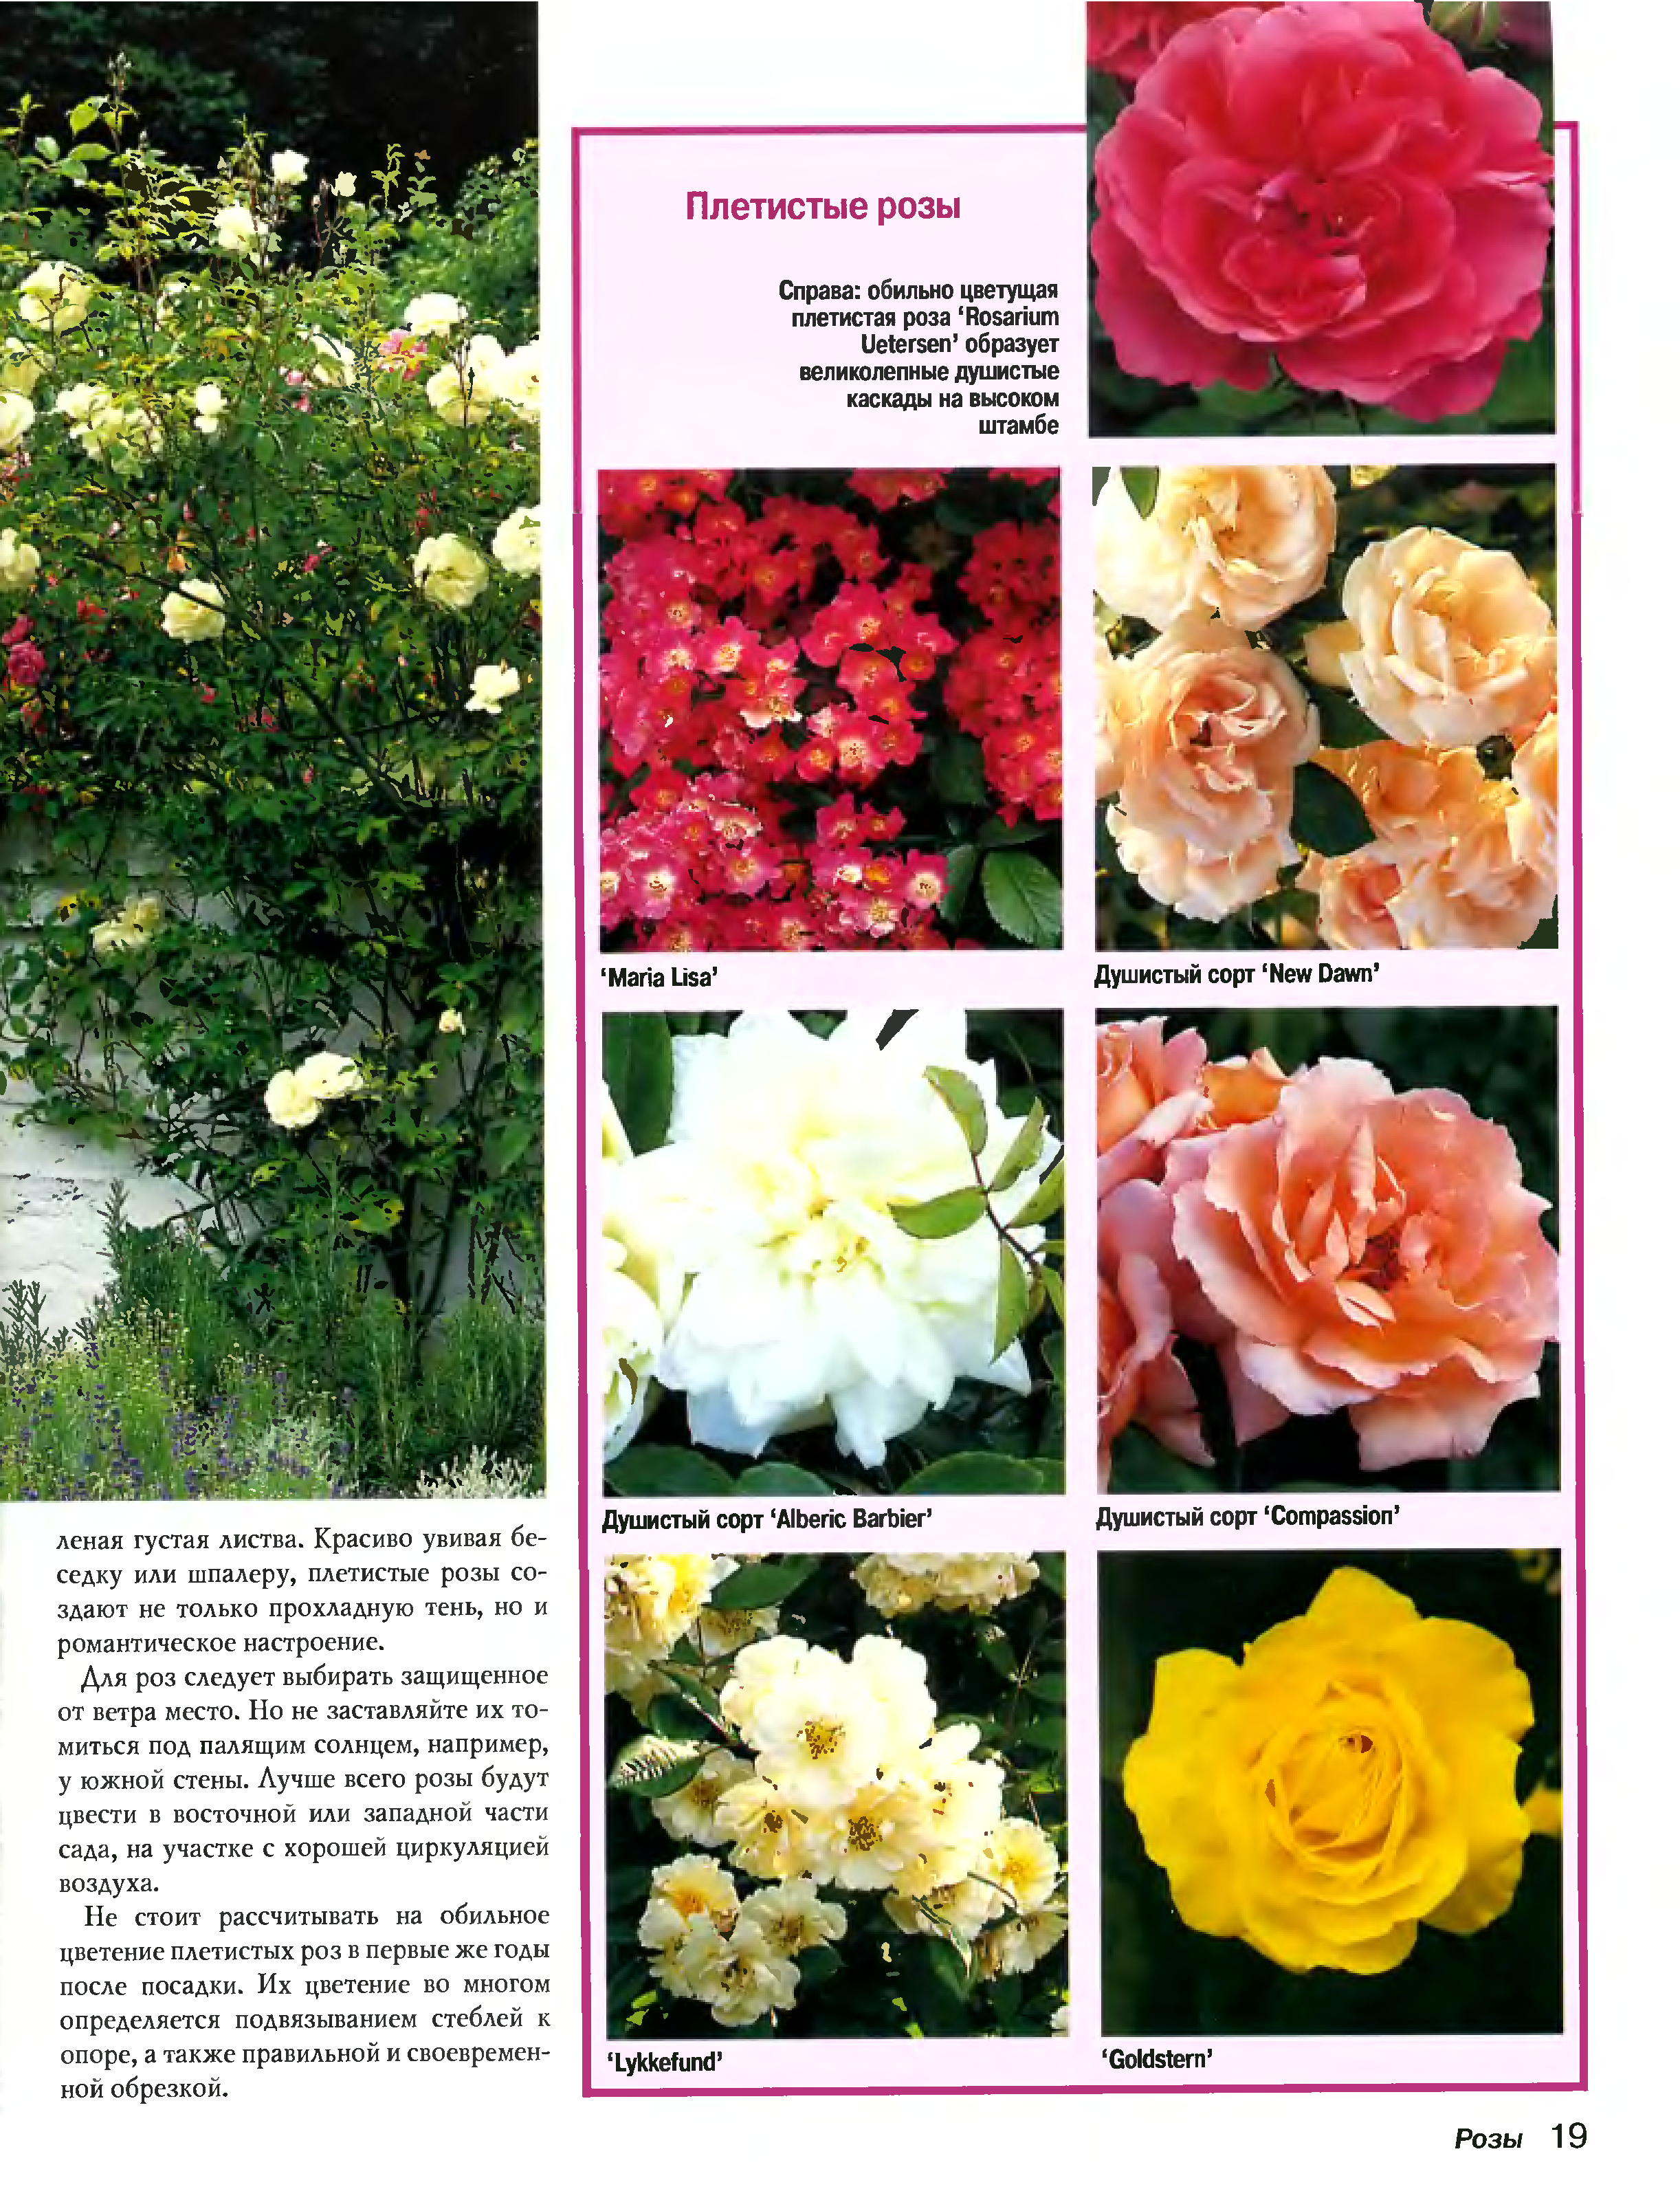 Плетистая роза амадеус, фото и описание_ | speakingflower.ru